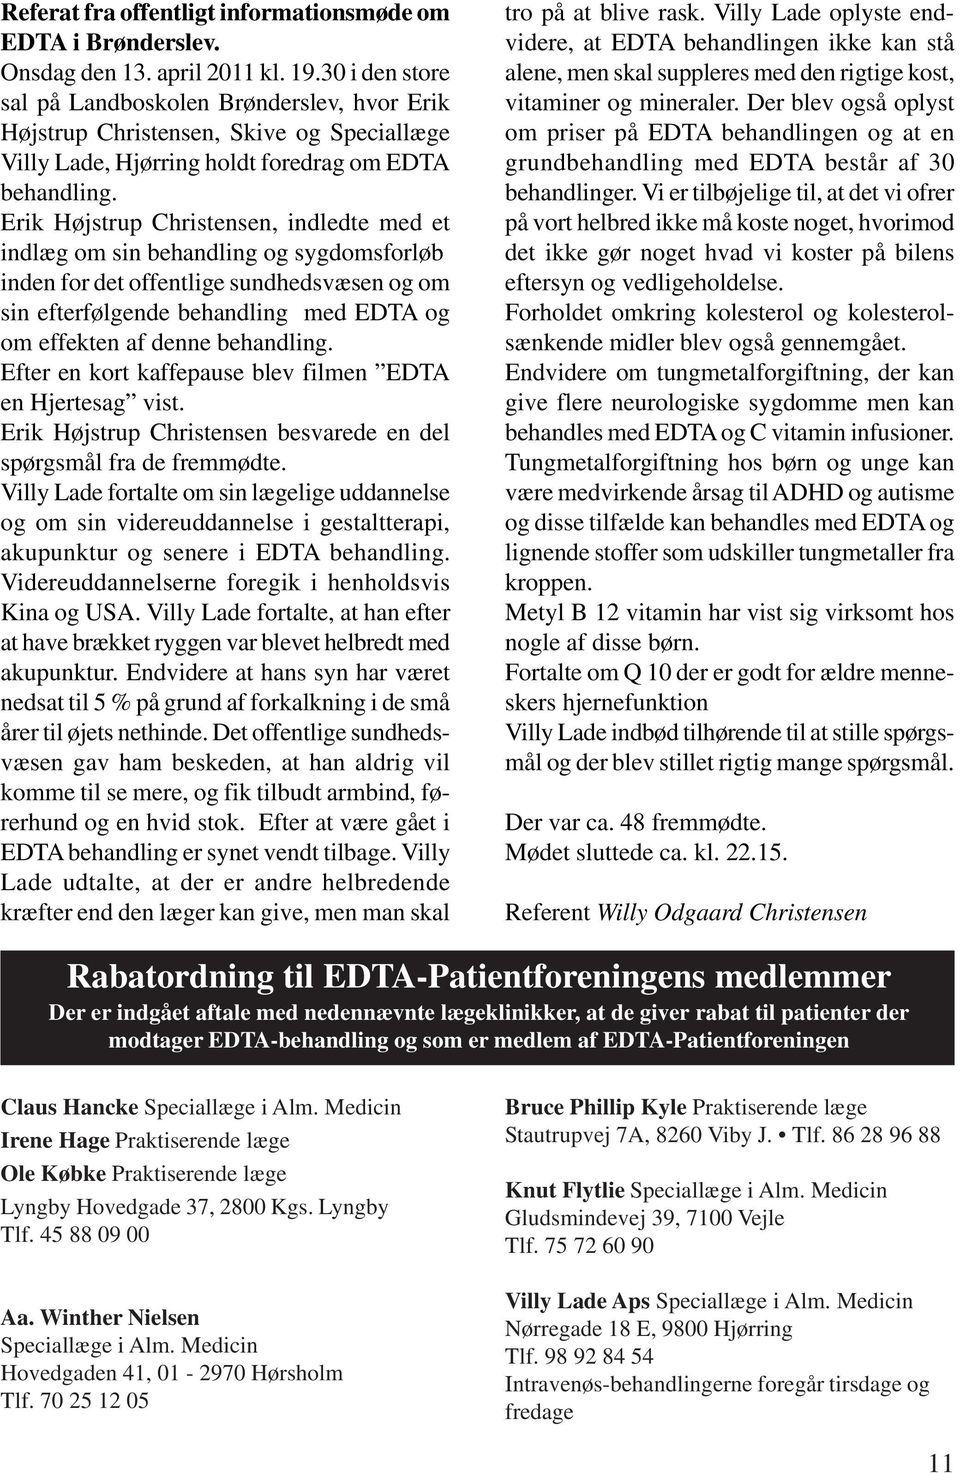 Erik Højstrup Christensen, indledte med et indlæg om sin behandling og sygdomsforløb inden for det offentlige sundhedsvæsen og om sin efterfølgende behandling med EDTA og om effekten af denne